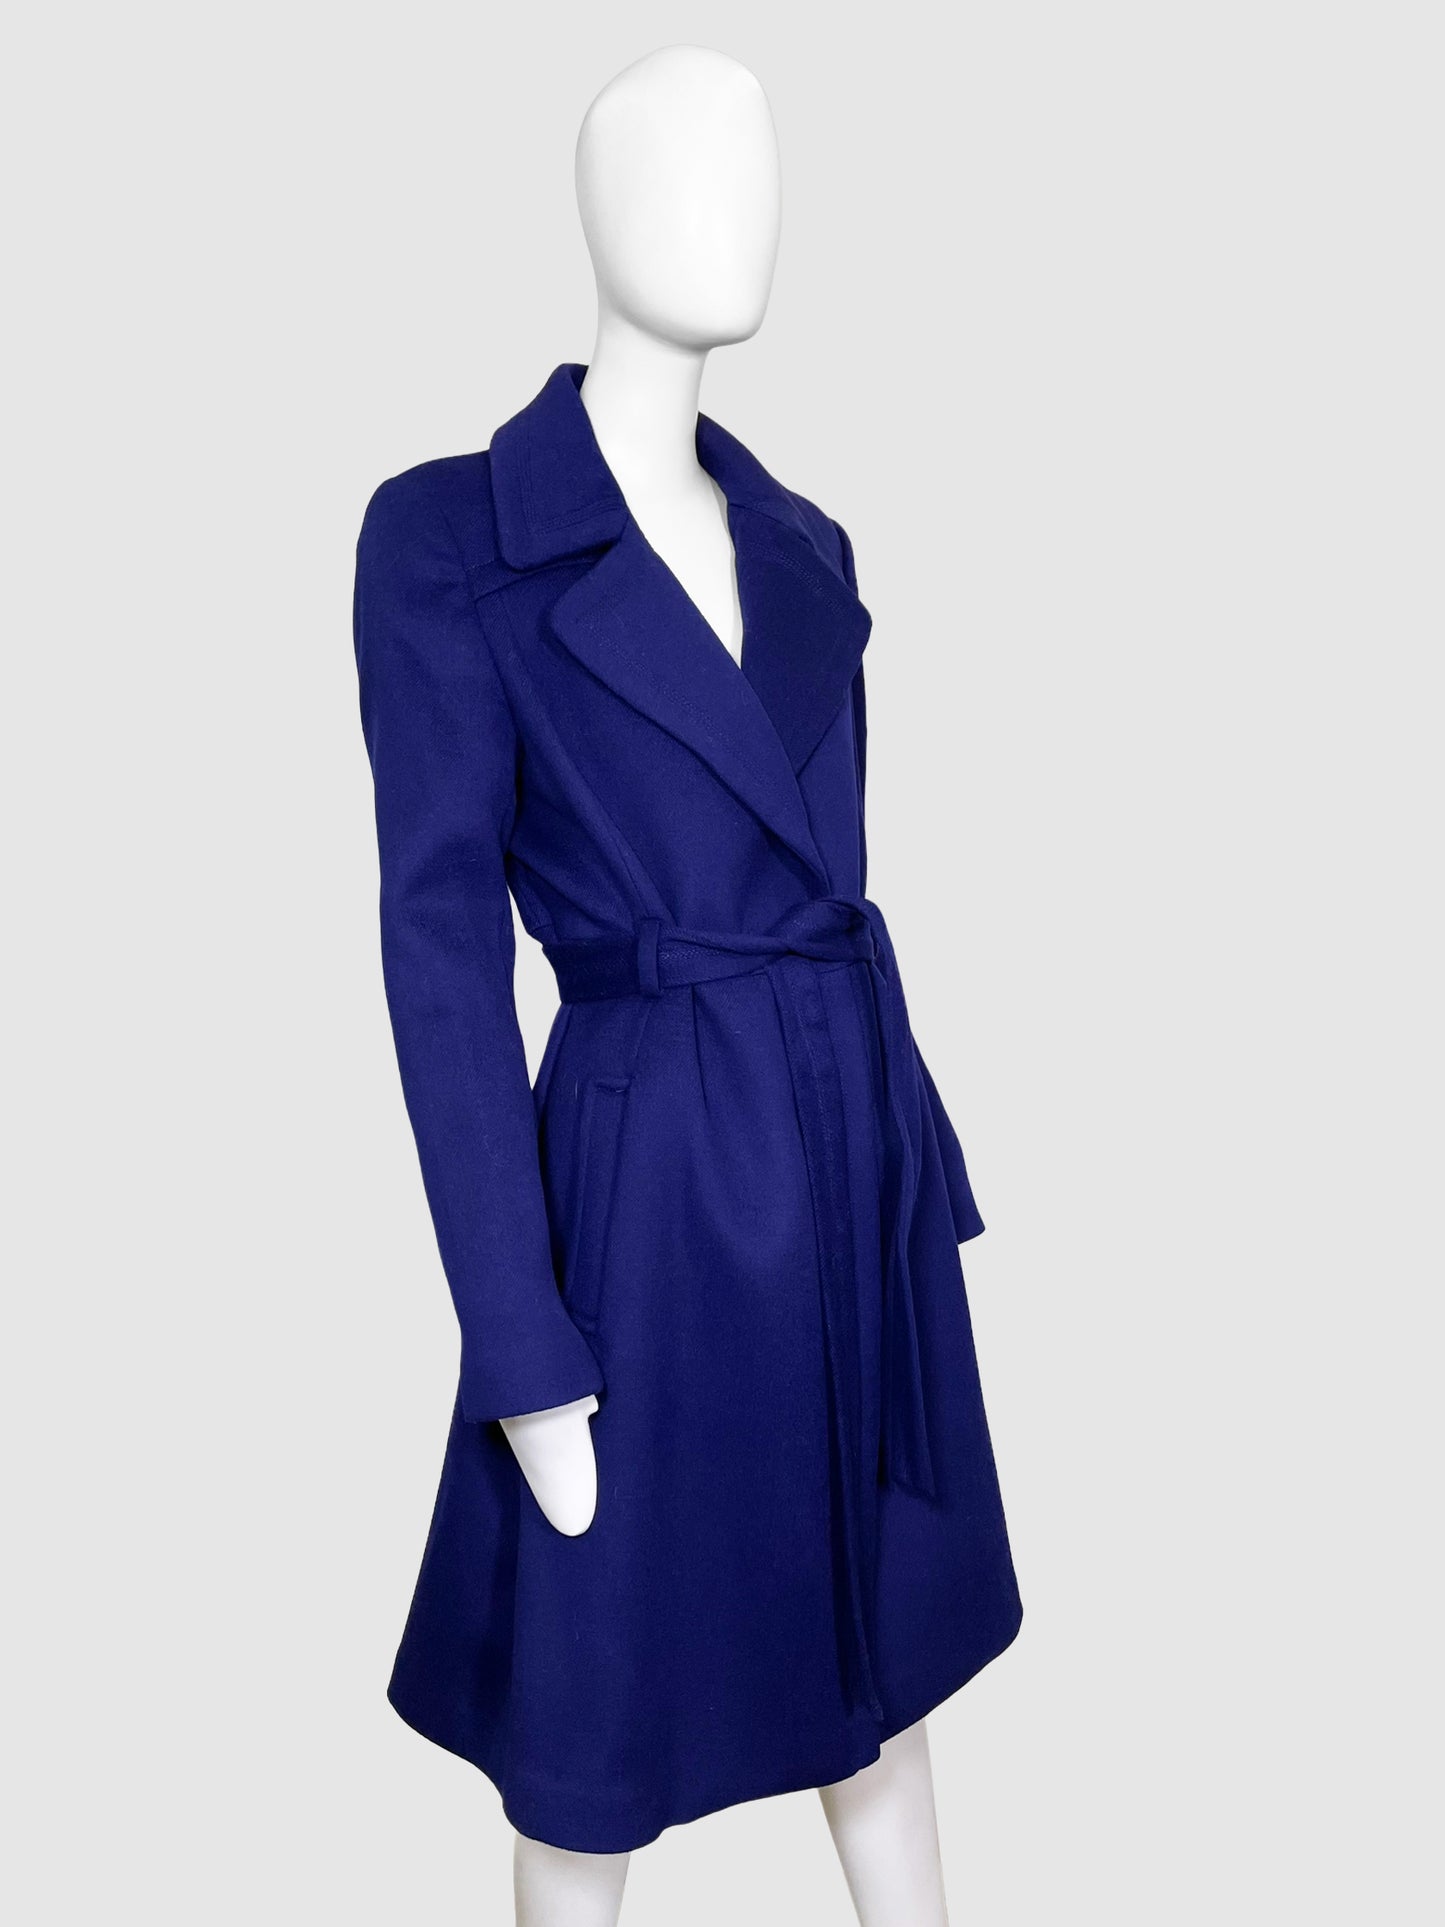 Diane Von Furstenberg Belted Wool Blend Coat - Size 12